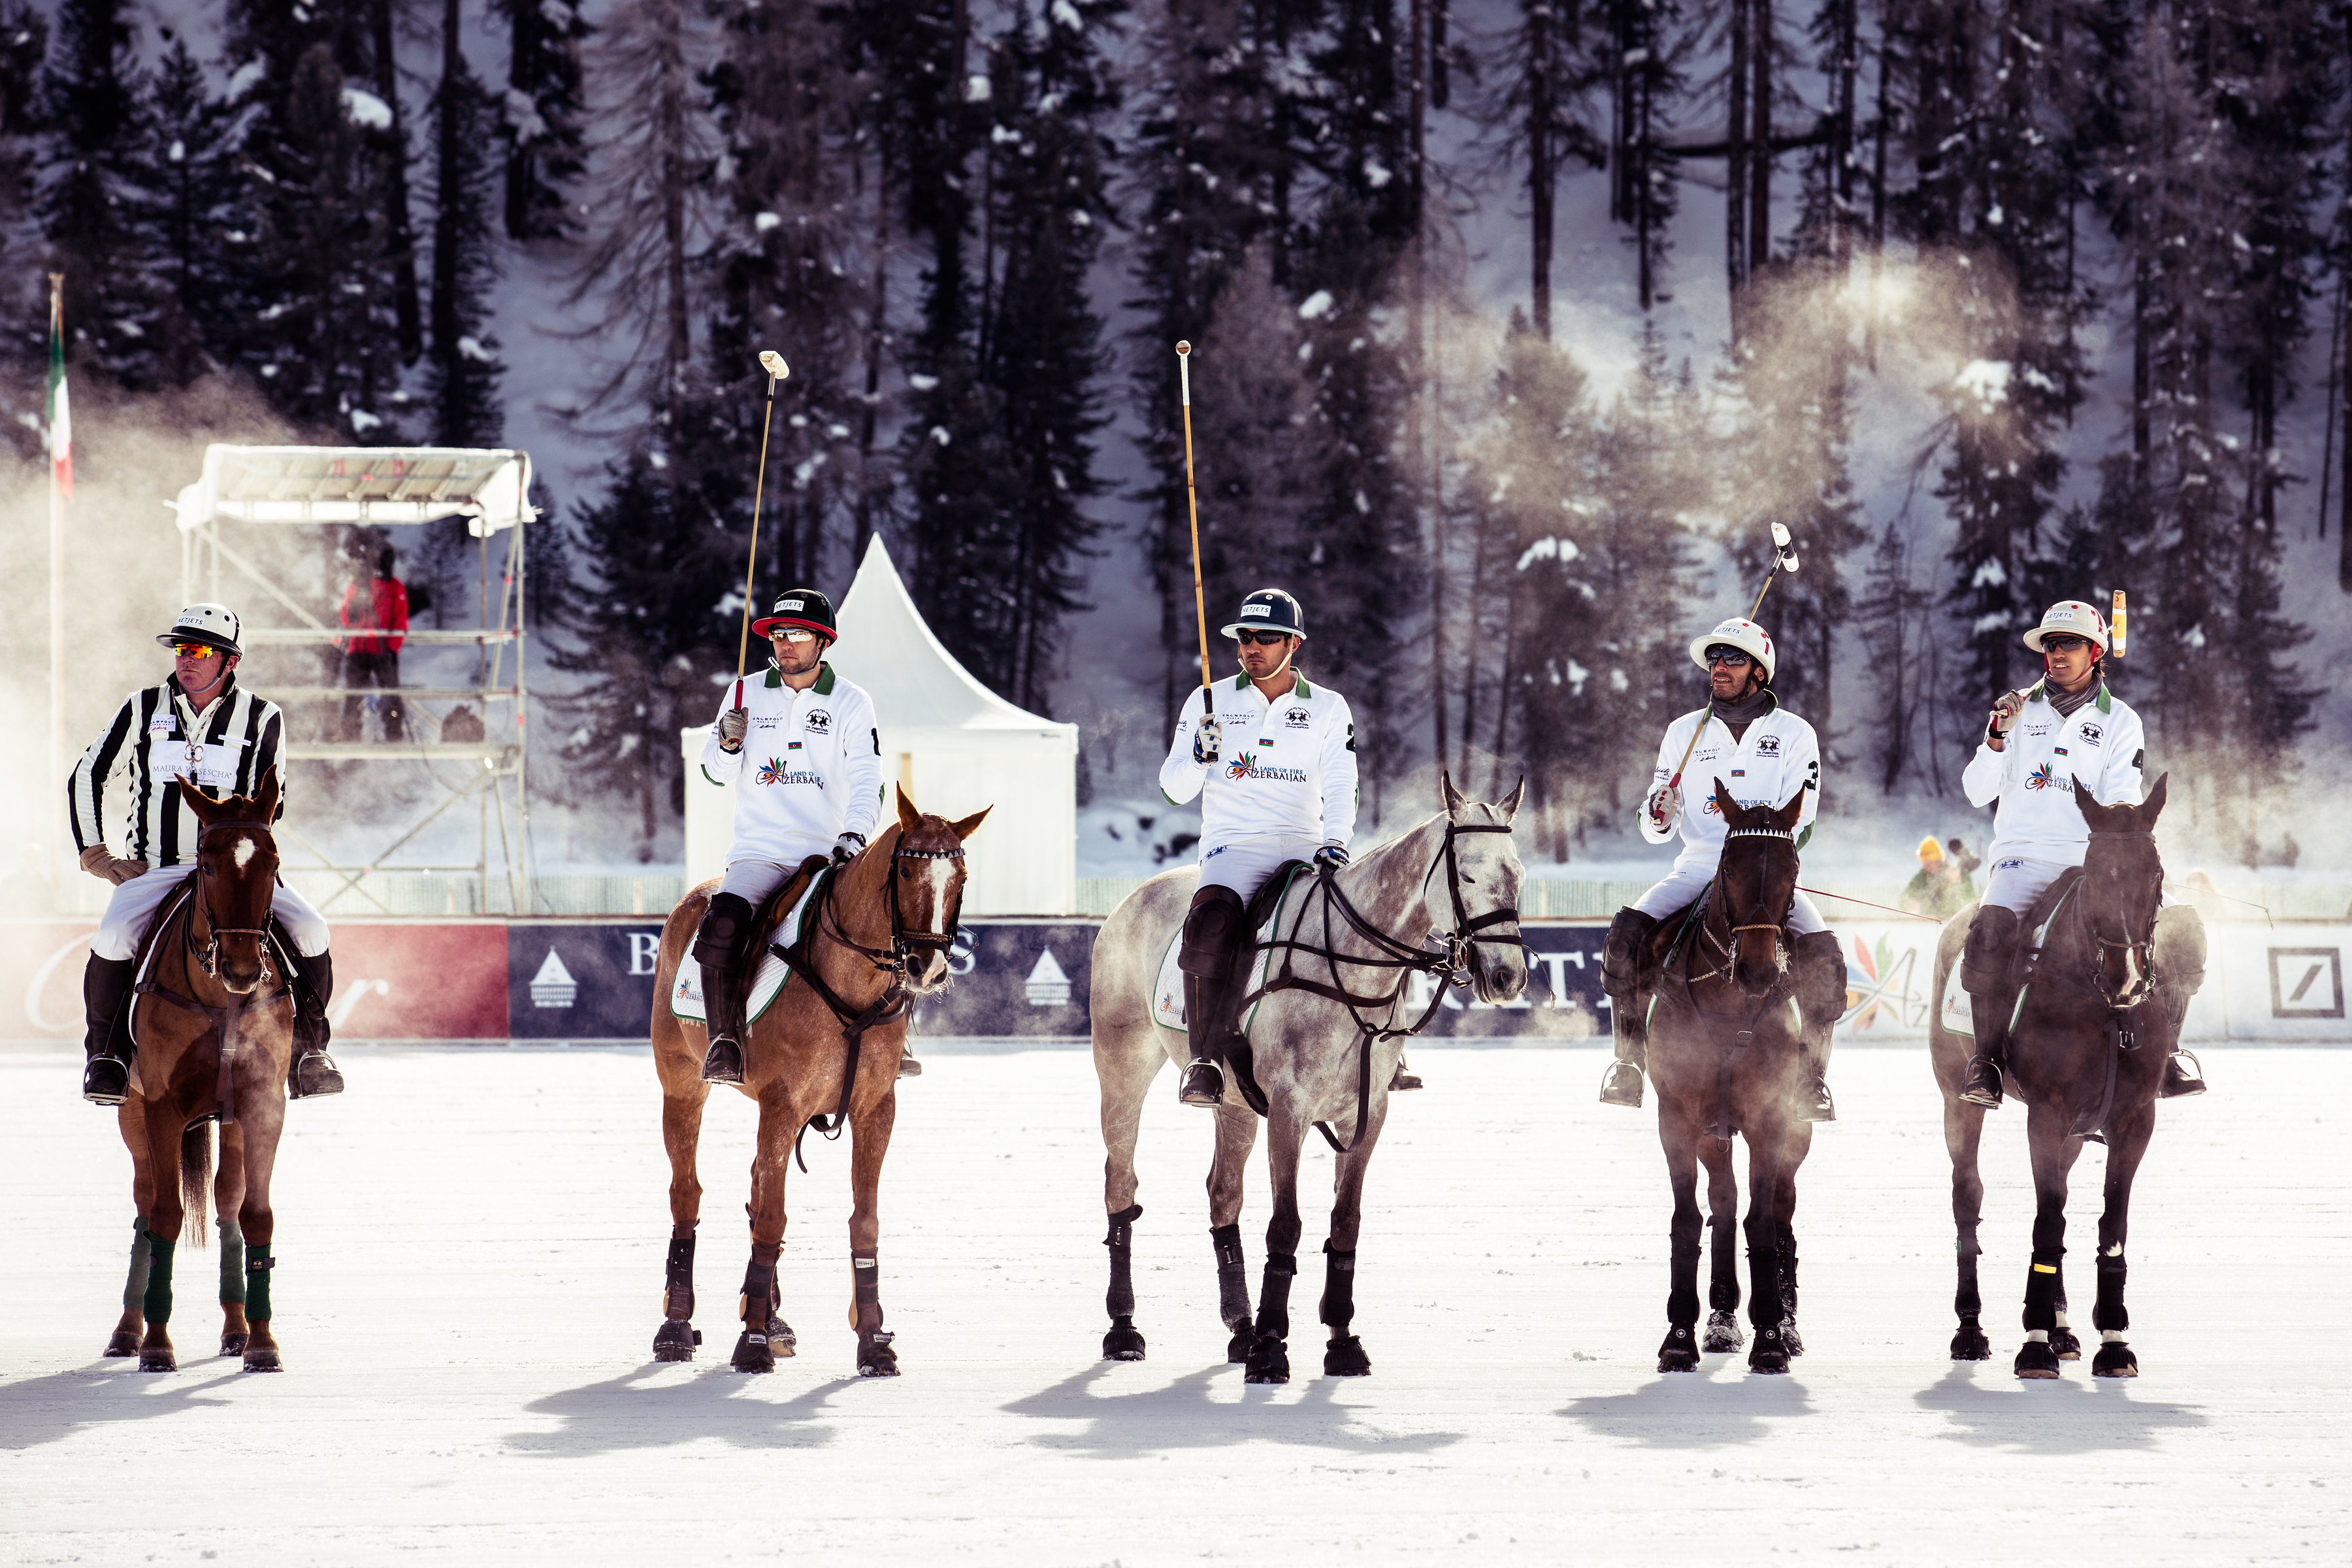 The Azerbaijan Snow Polo team 2018